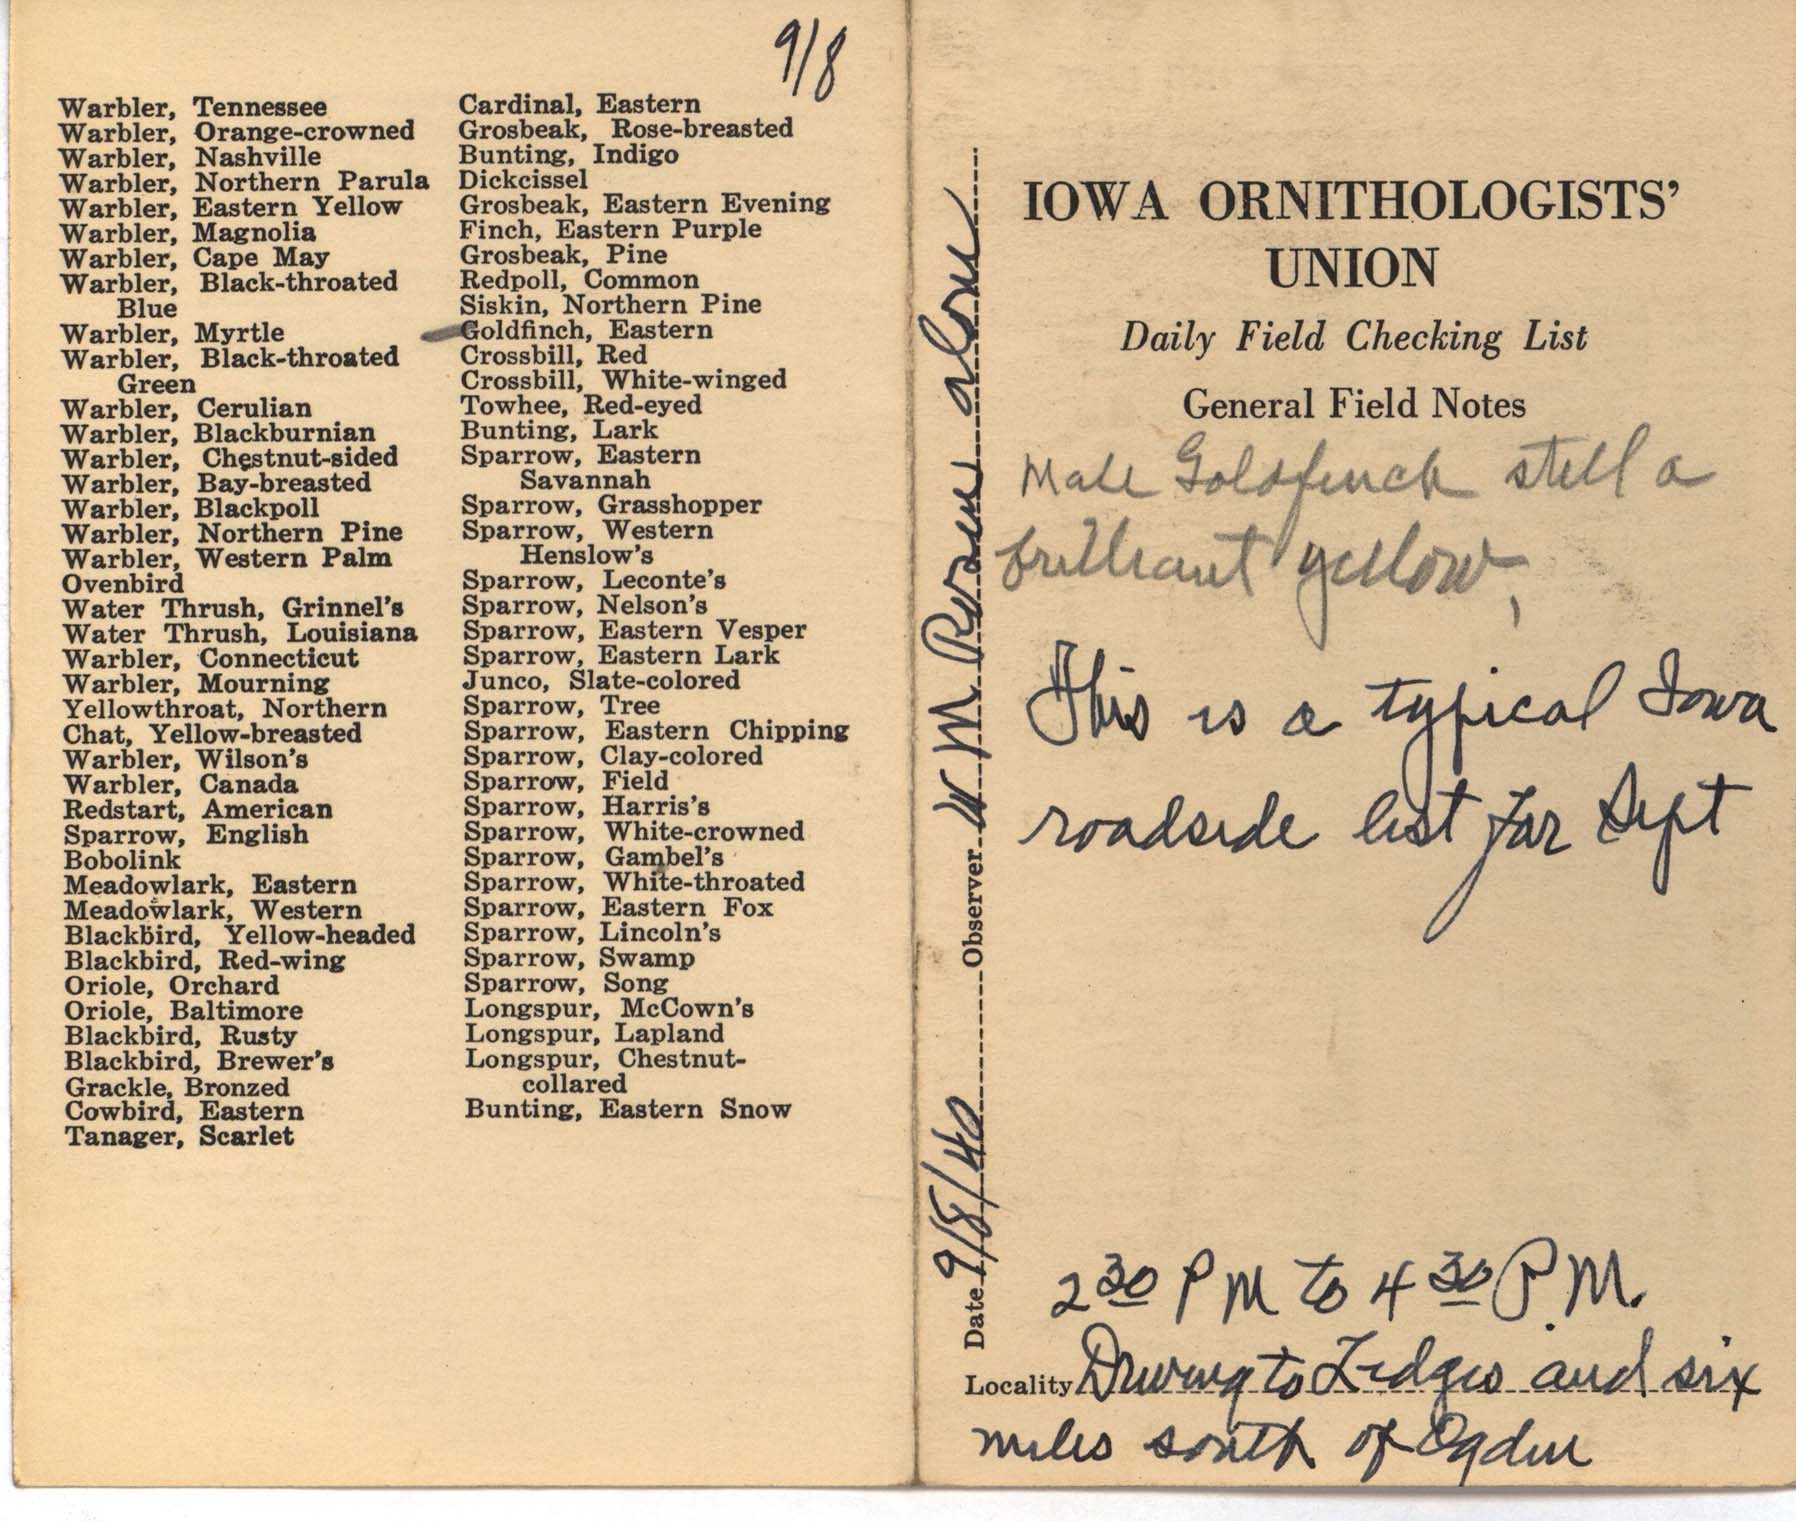 Daily field checking list by Walter Rosene, September 8, 1940